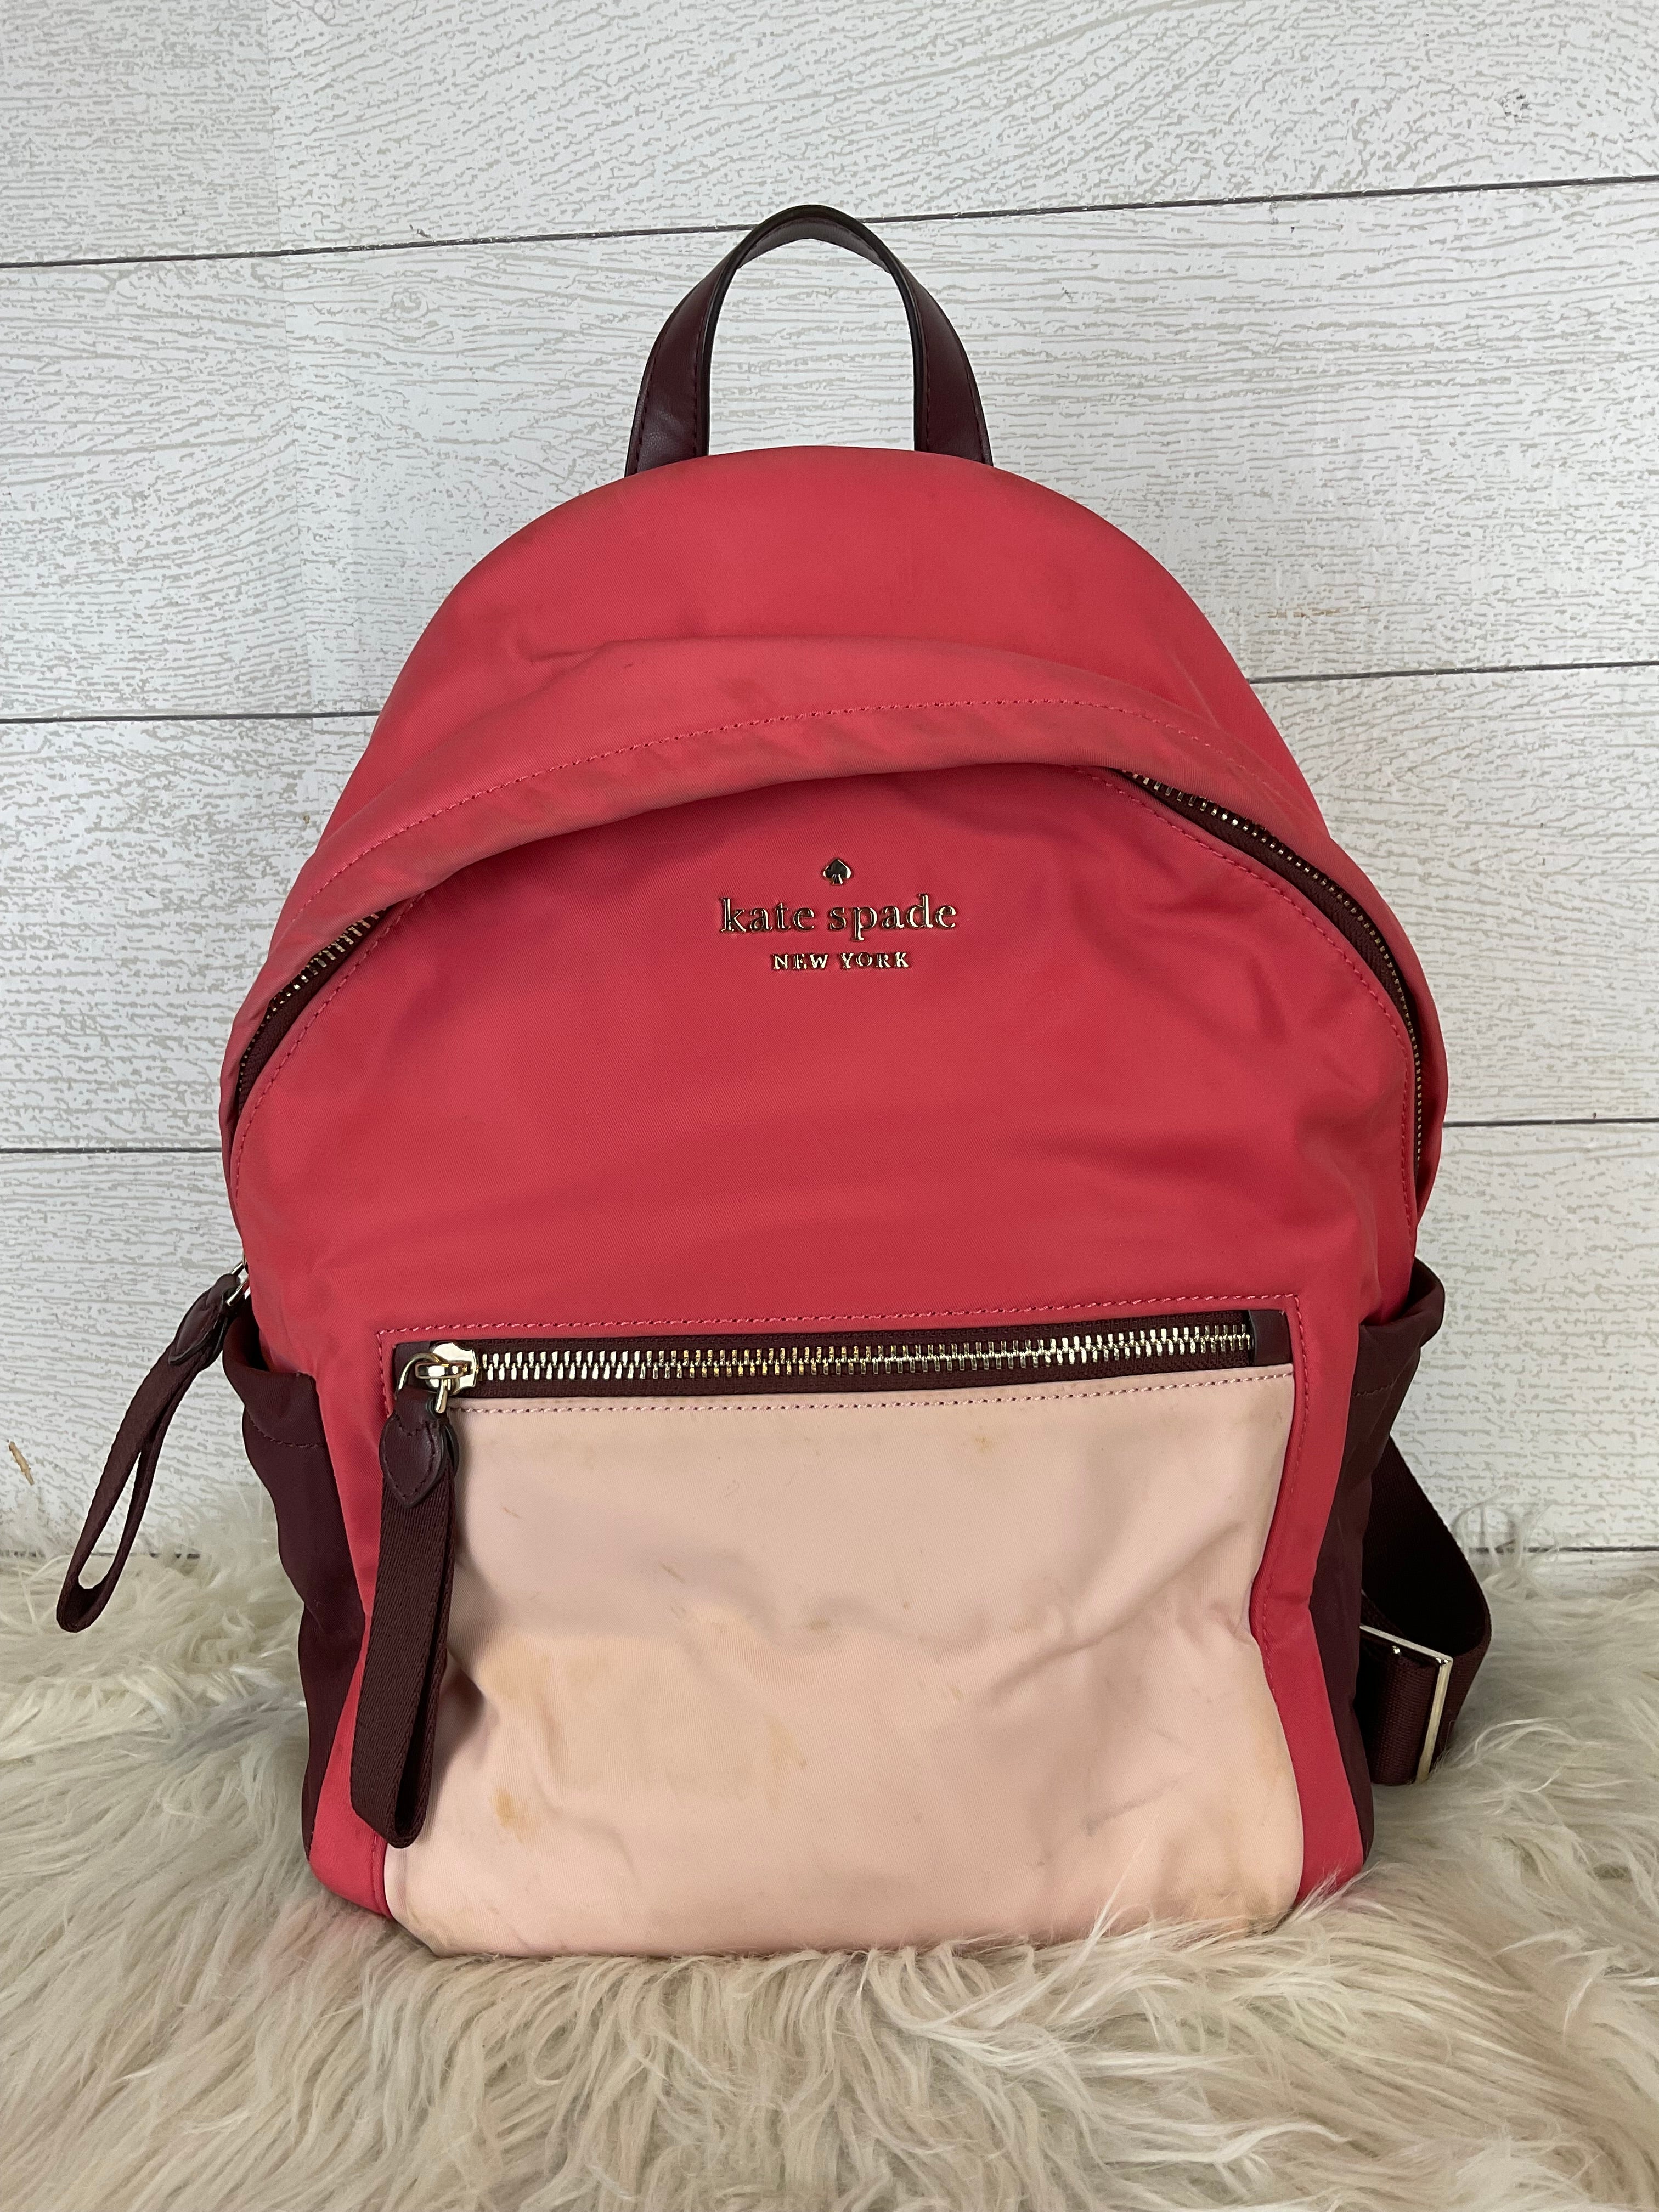 La Diva Leather Backpack Purse Vintage La Diva Italian | Etsy Canada | Backpack  purse, Leather backpack purse, Leather